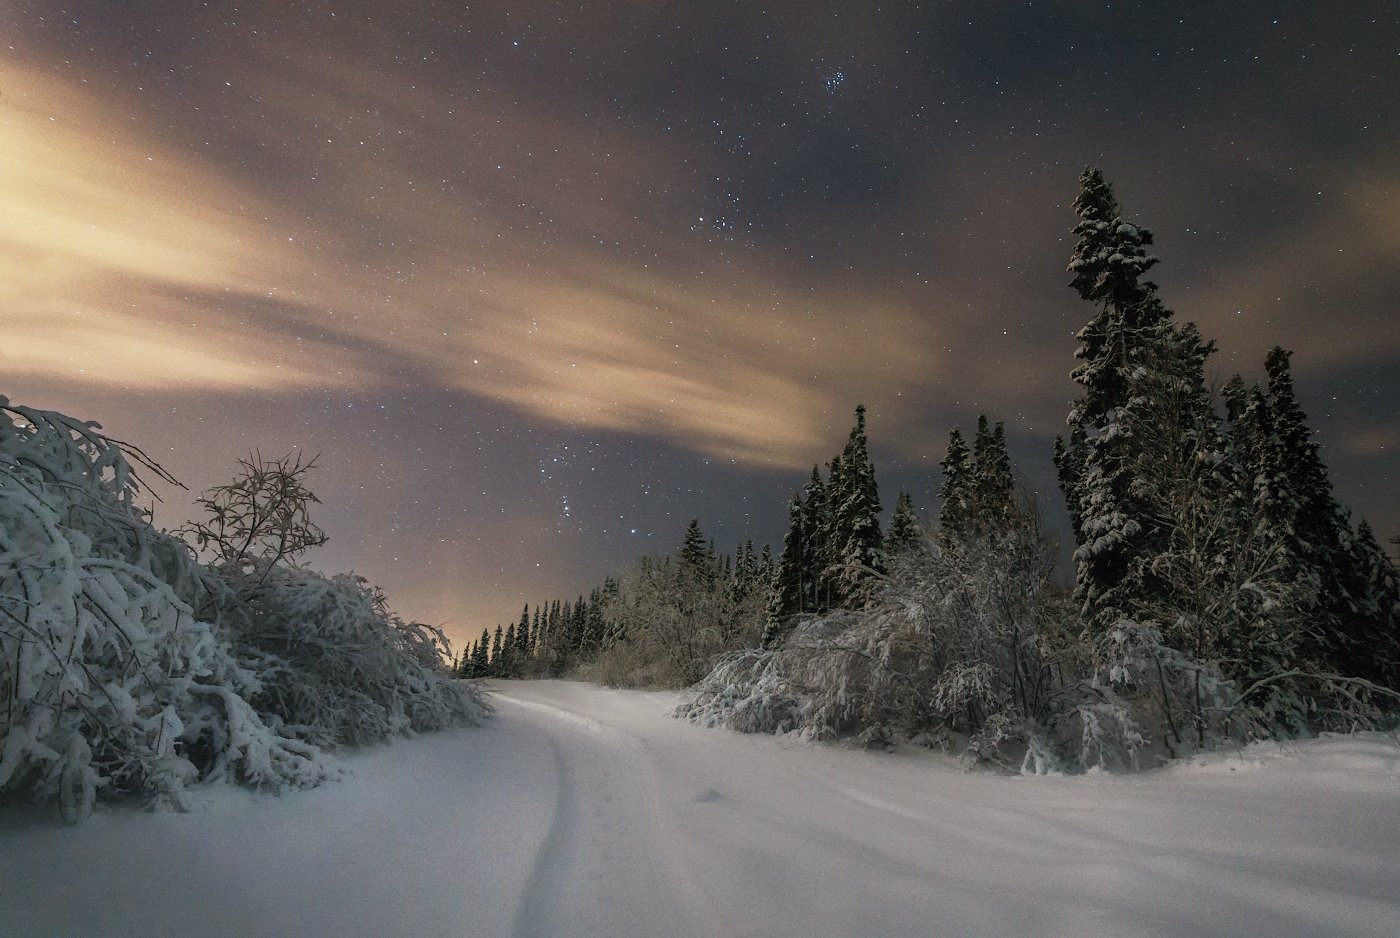 Далекий северный край. Природа Печора Коми зима. Зима в Печоре Республика Коми. Зимний ночной пейзаж. Зимняя ночь.